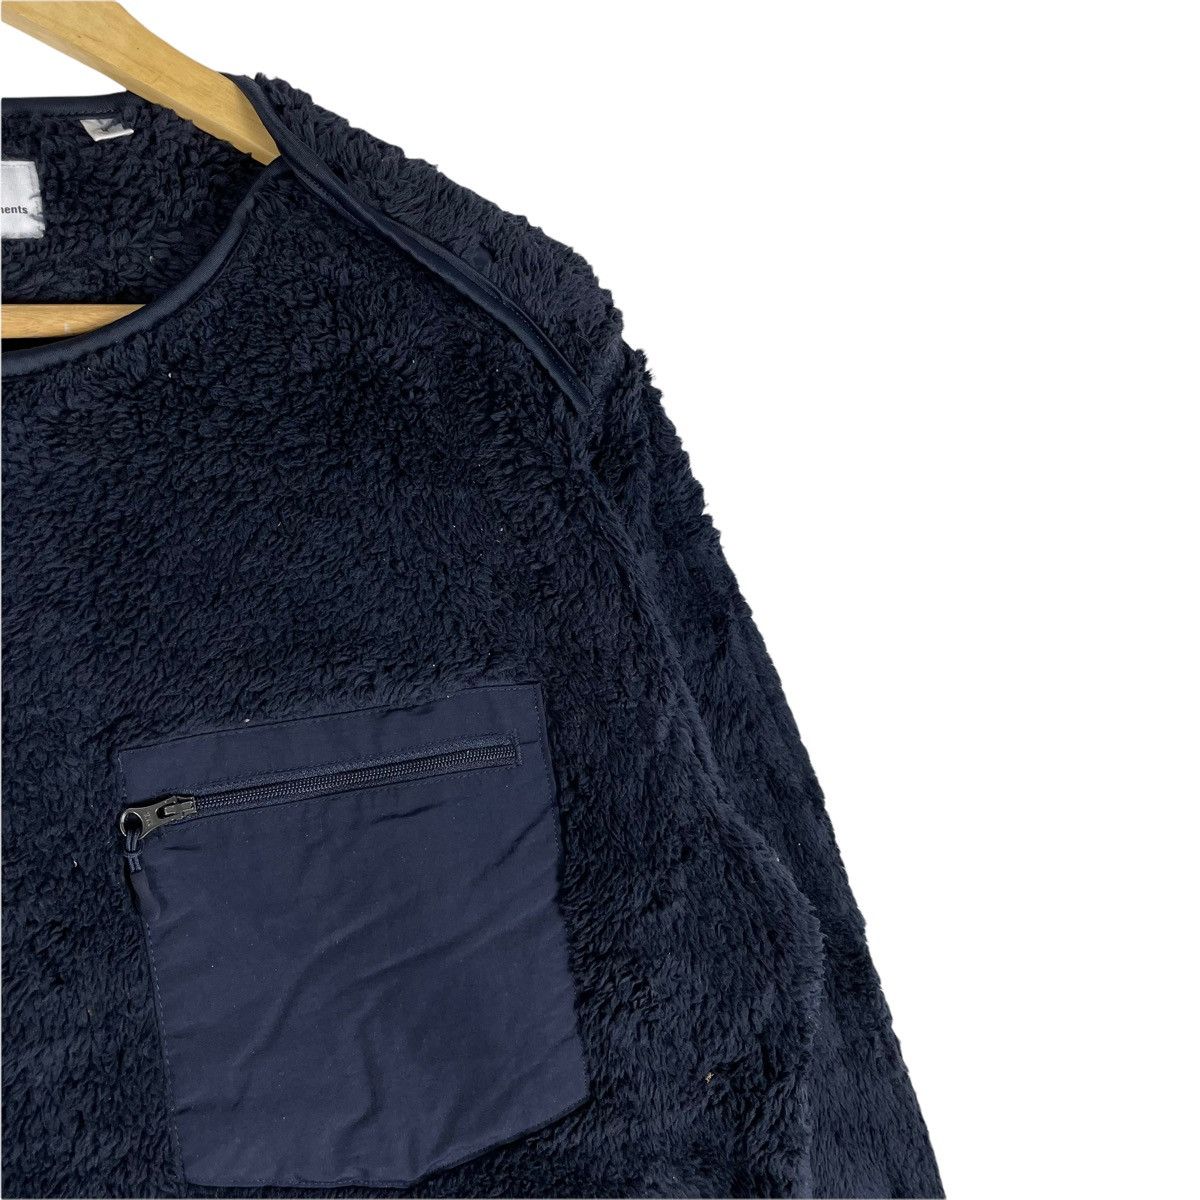 ⚡️EG X UNIQLO FW19 Fleece Light Jacket - 4